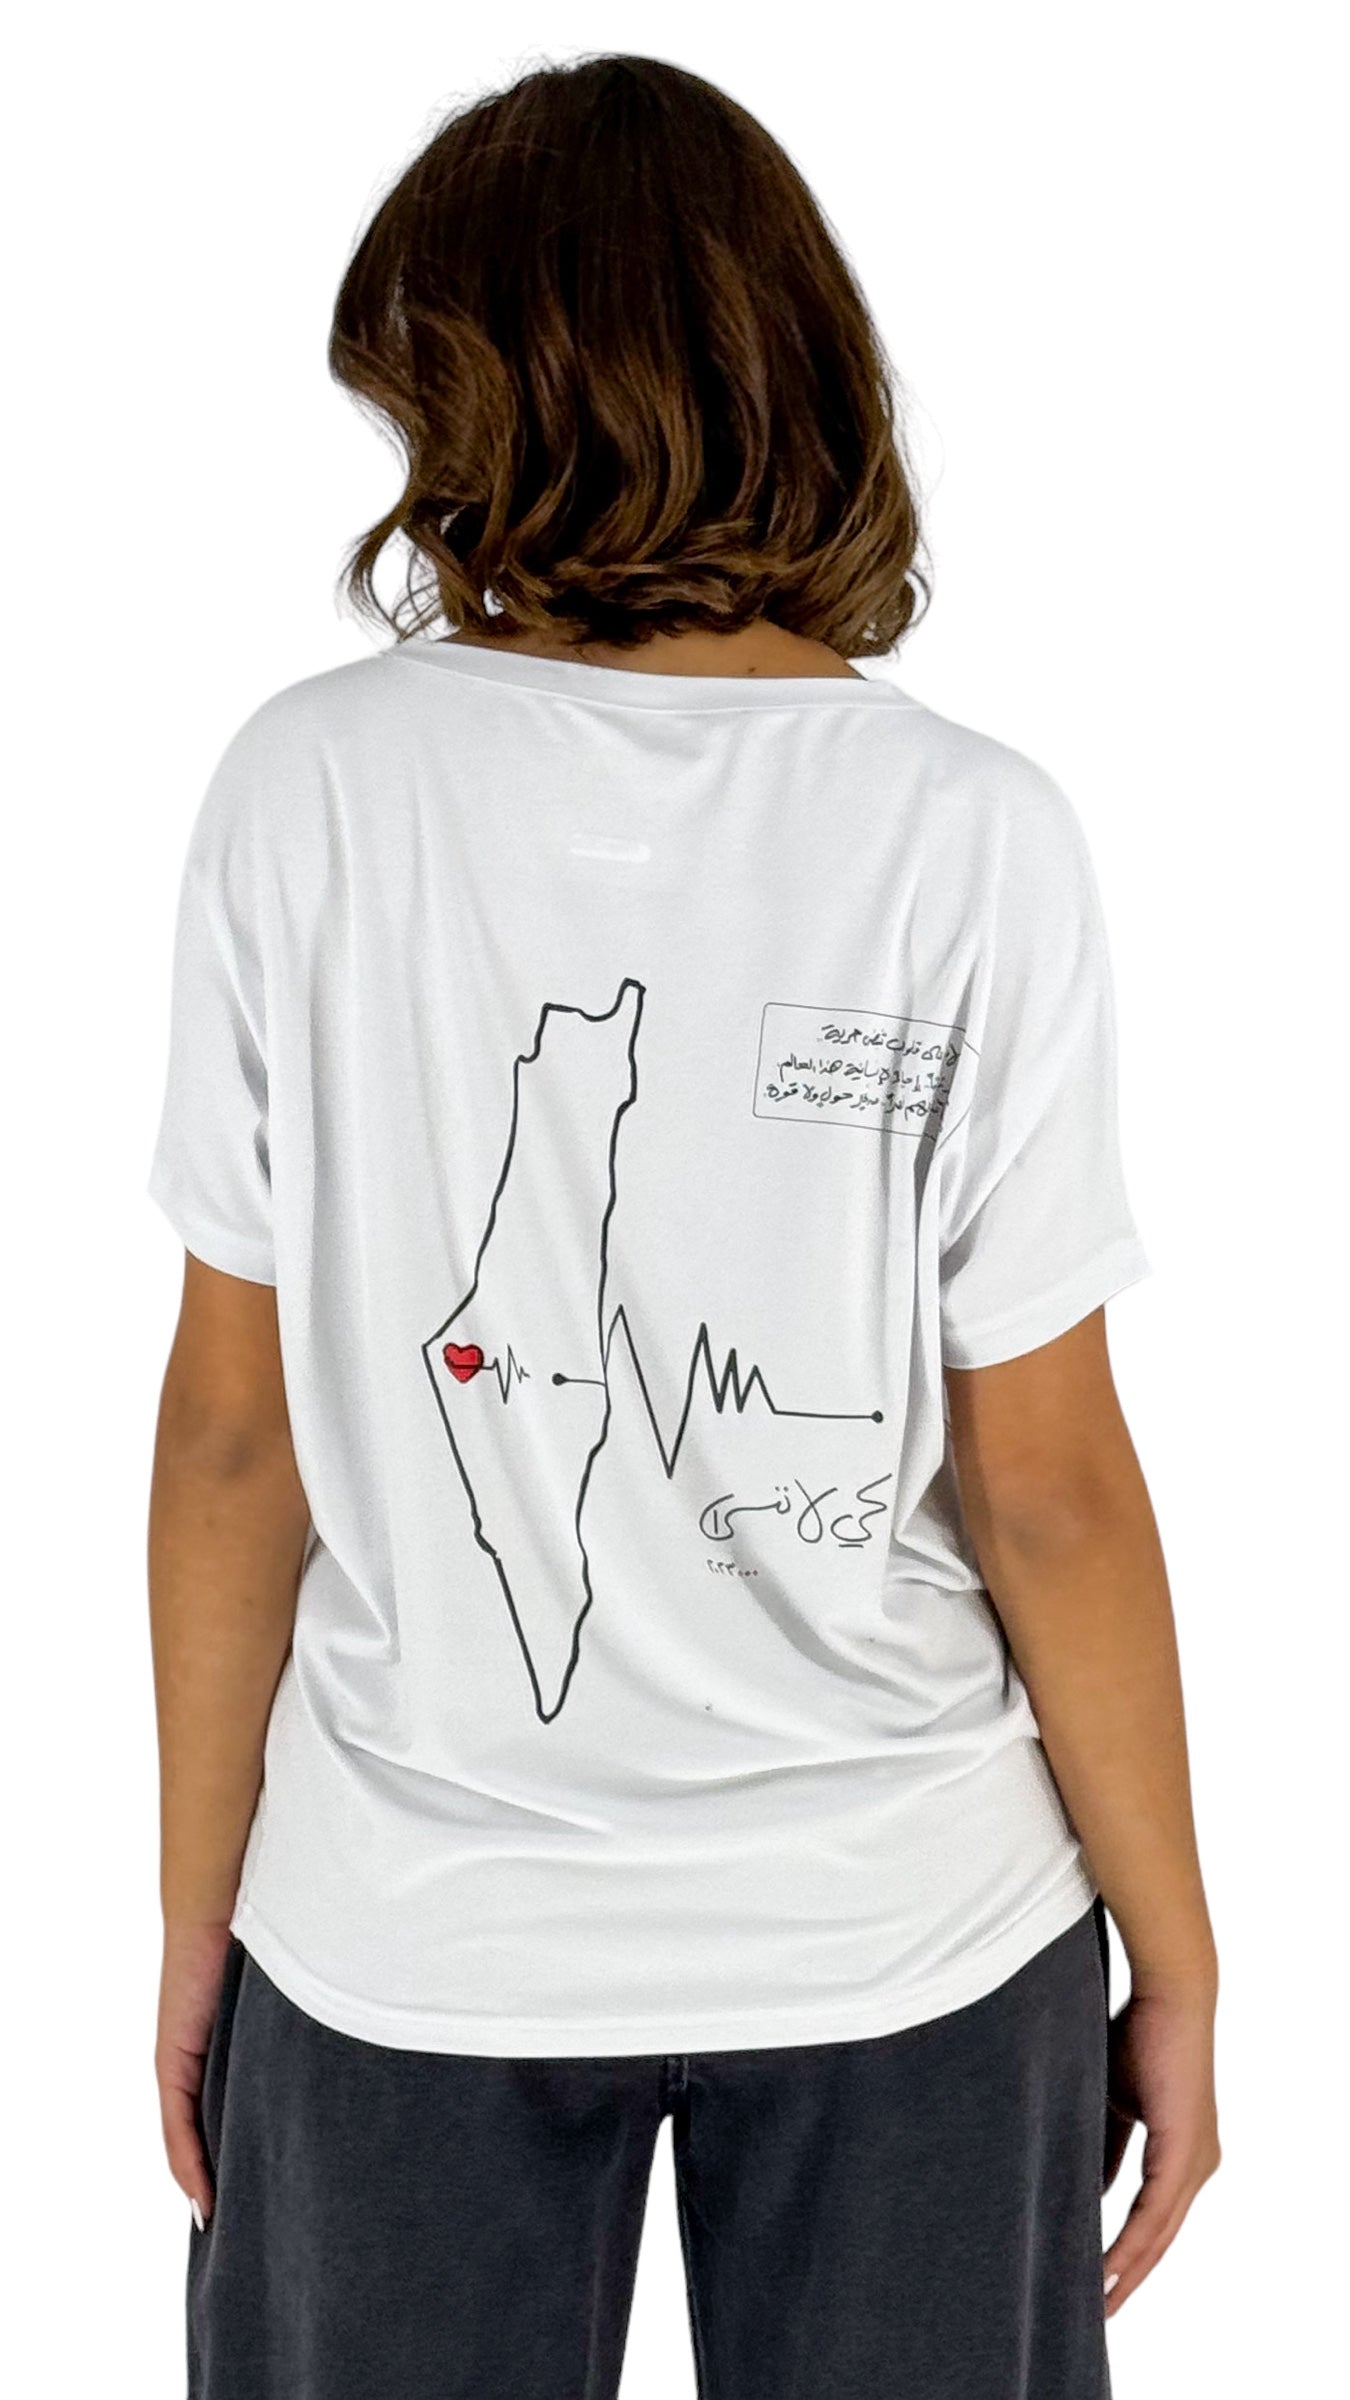 Palestine White V-neck T Shirt